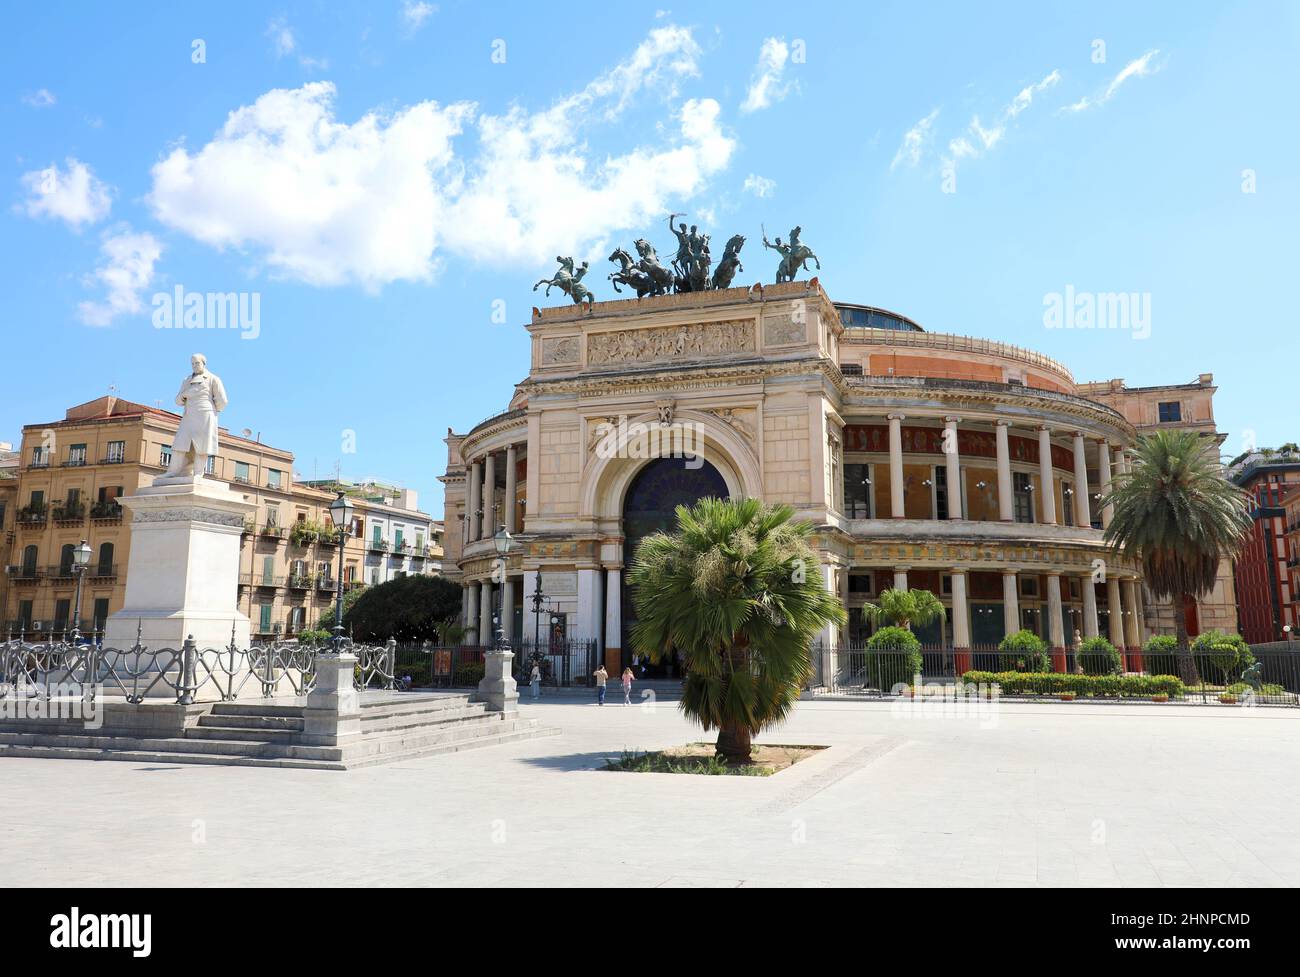 PALERMO, ITALY - JULY 05, 2020: POLITEAMA GARIBALDI theatre and monument to RUGGIERO SETTIMO in Palermo, Sicily, Italy Stock Photo